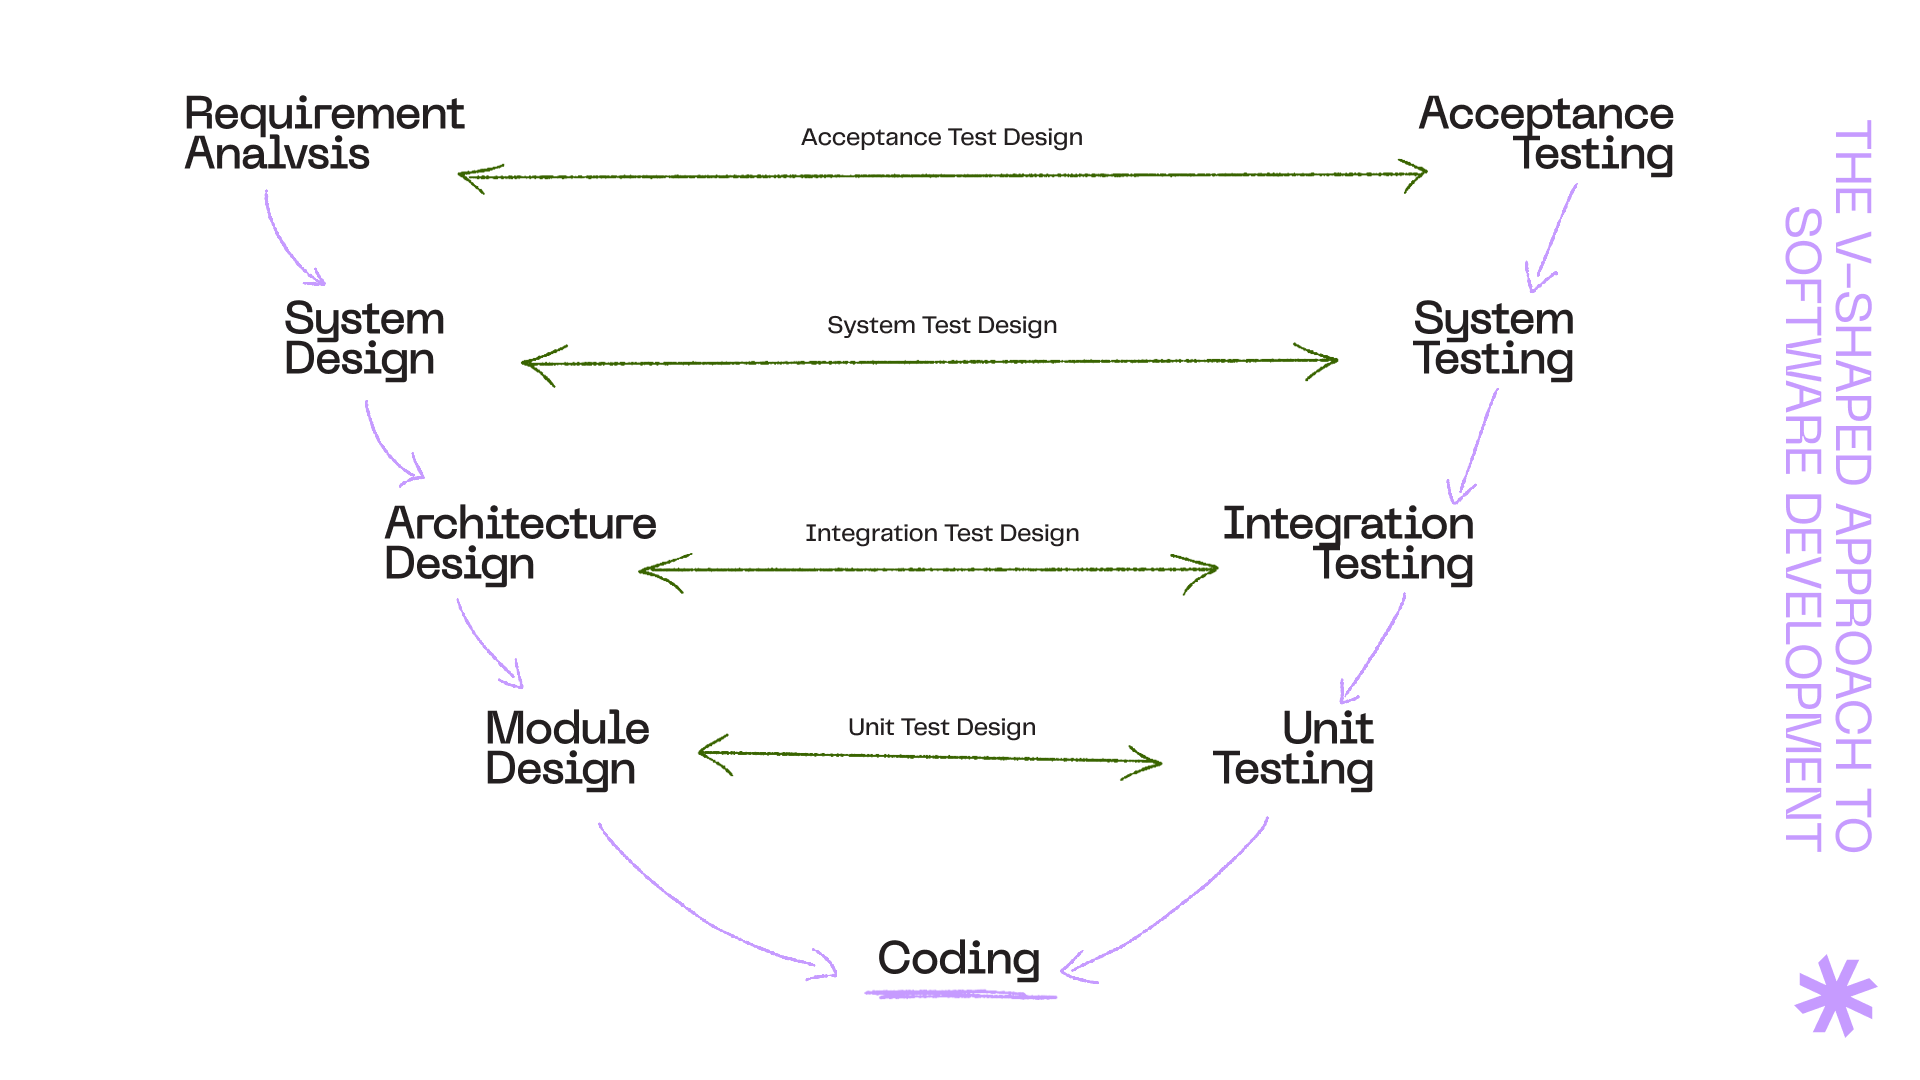 The model of the V-shaped development method